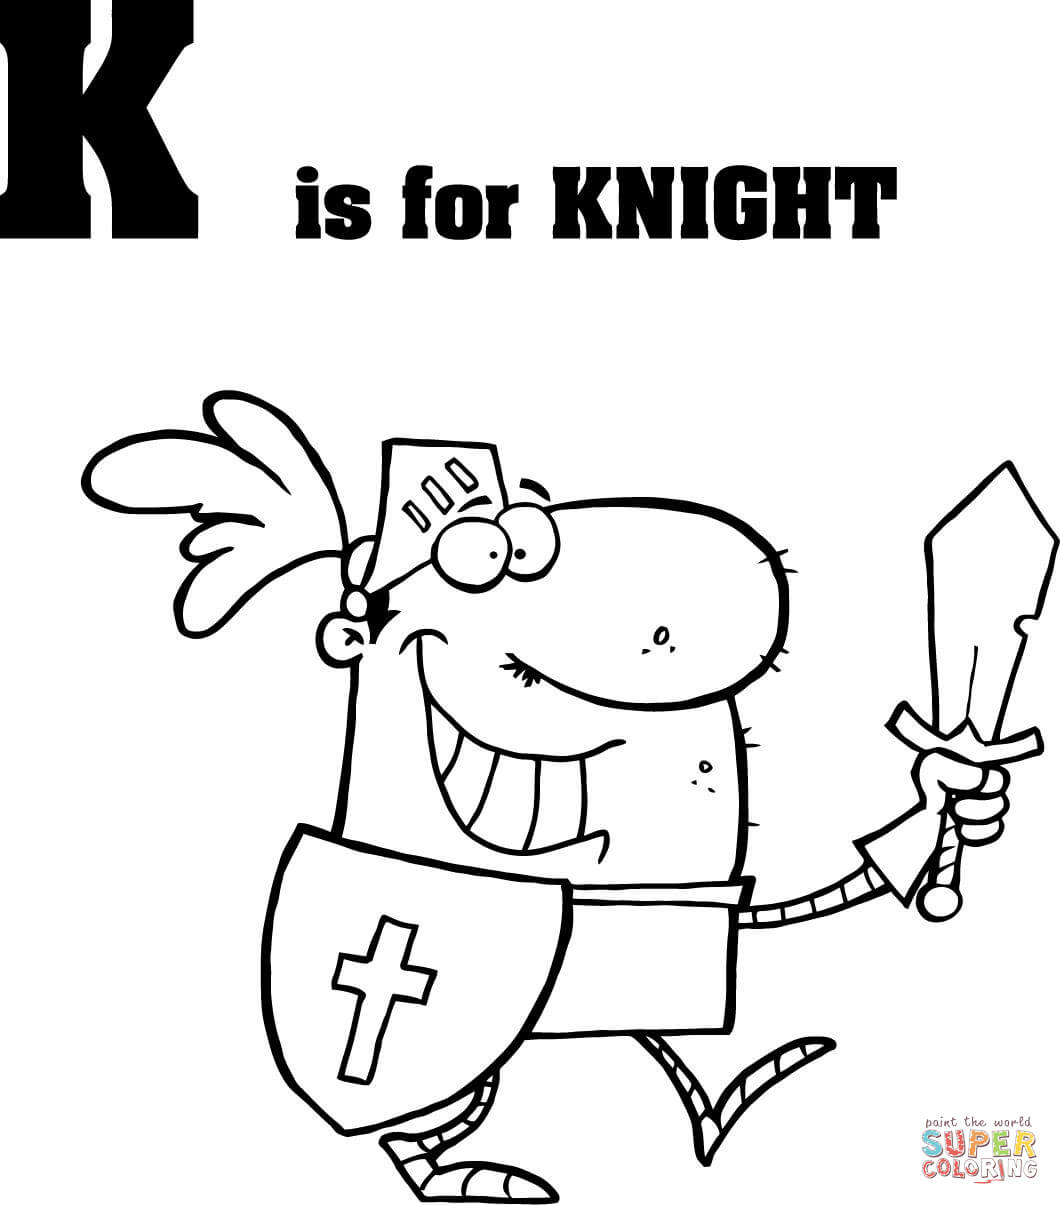 字母 K 代表字母 K 中的骑士